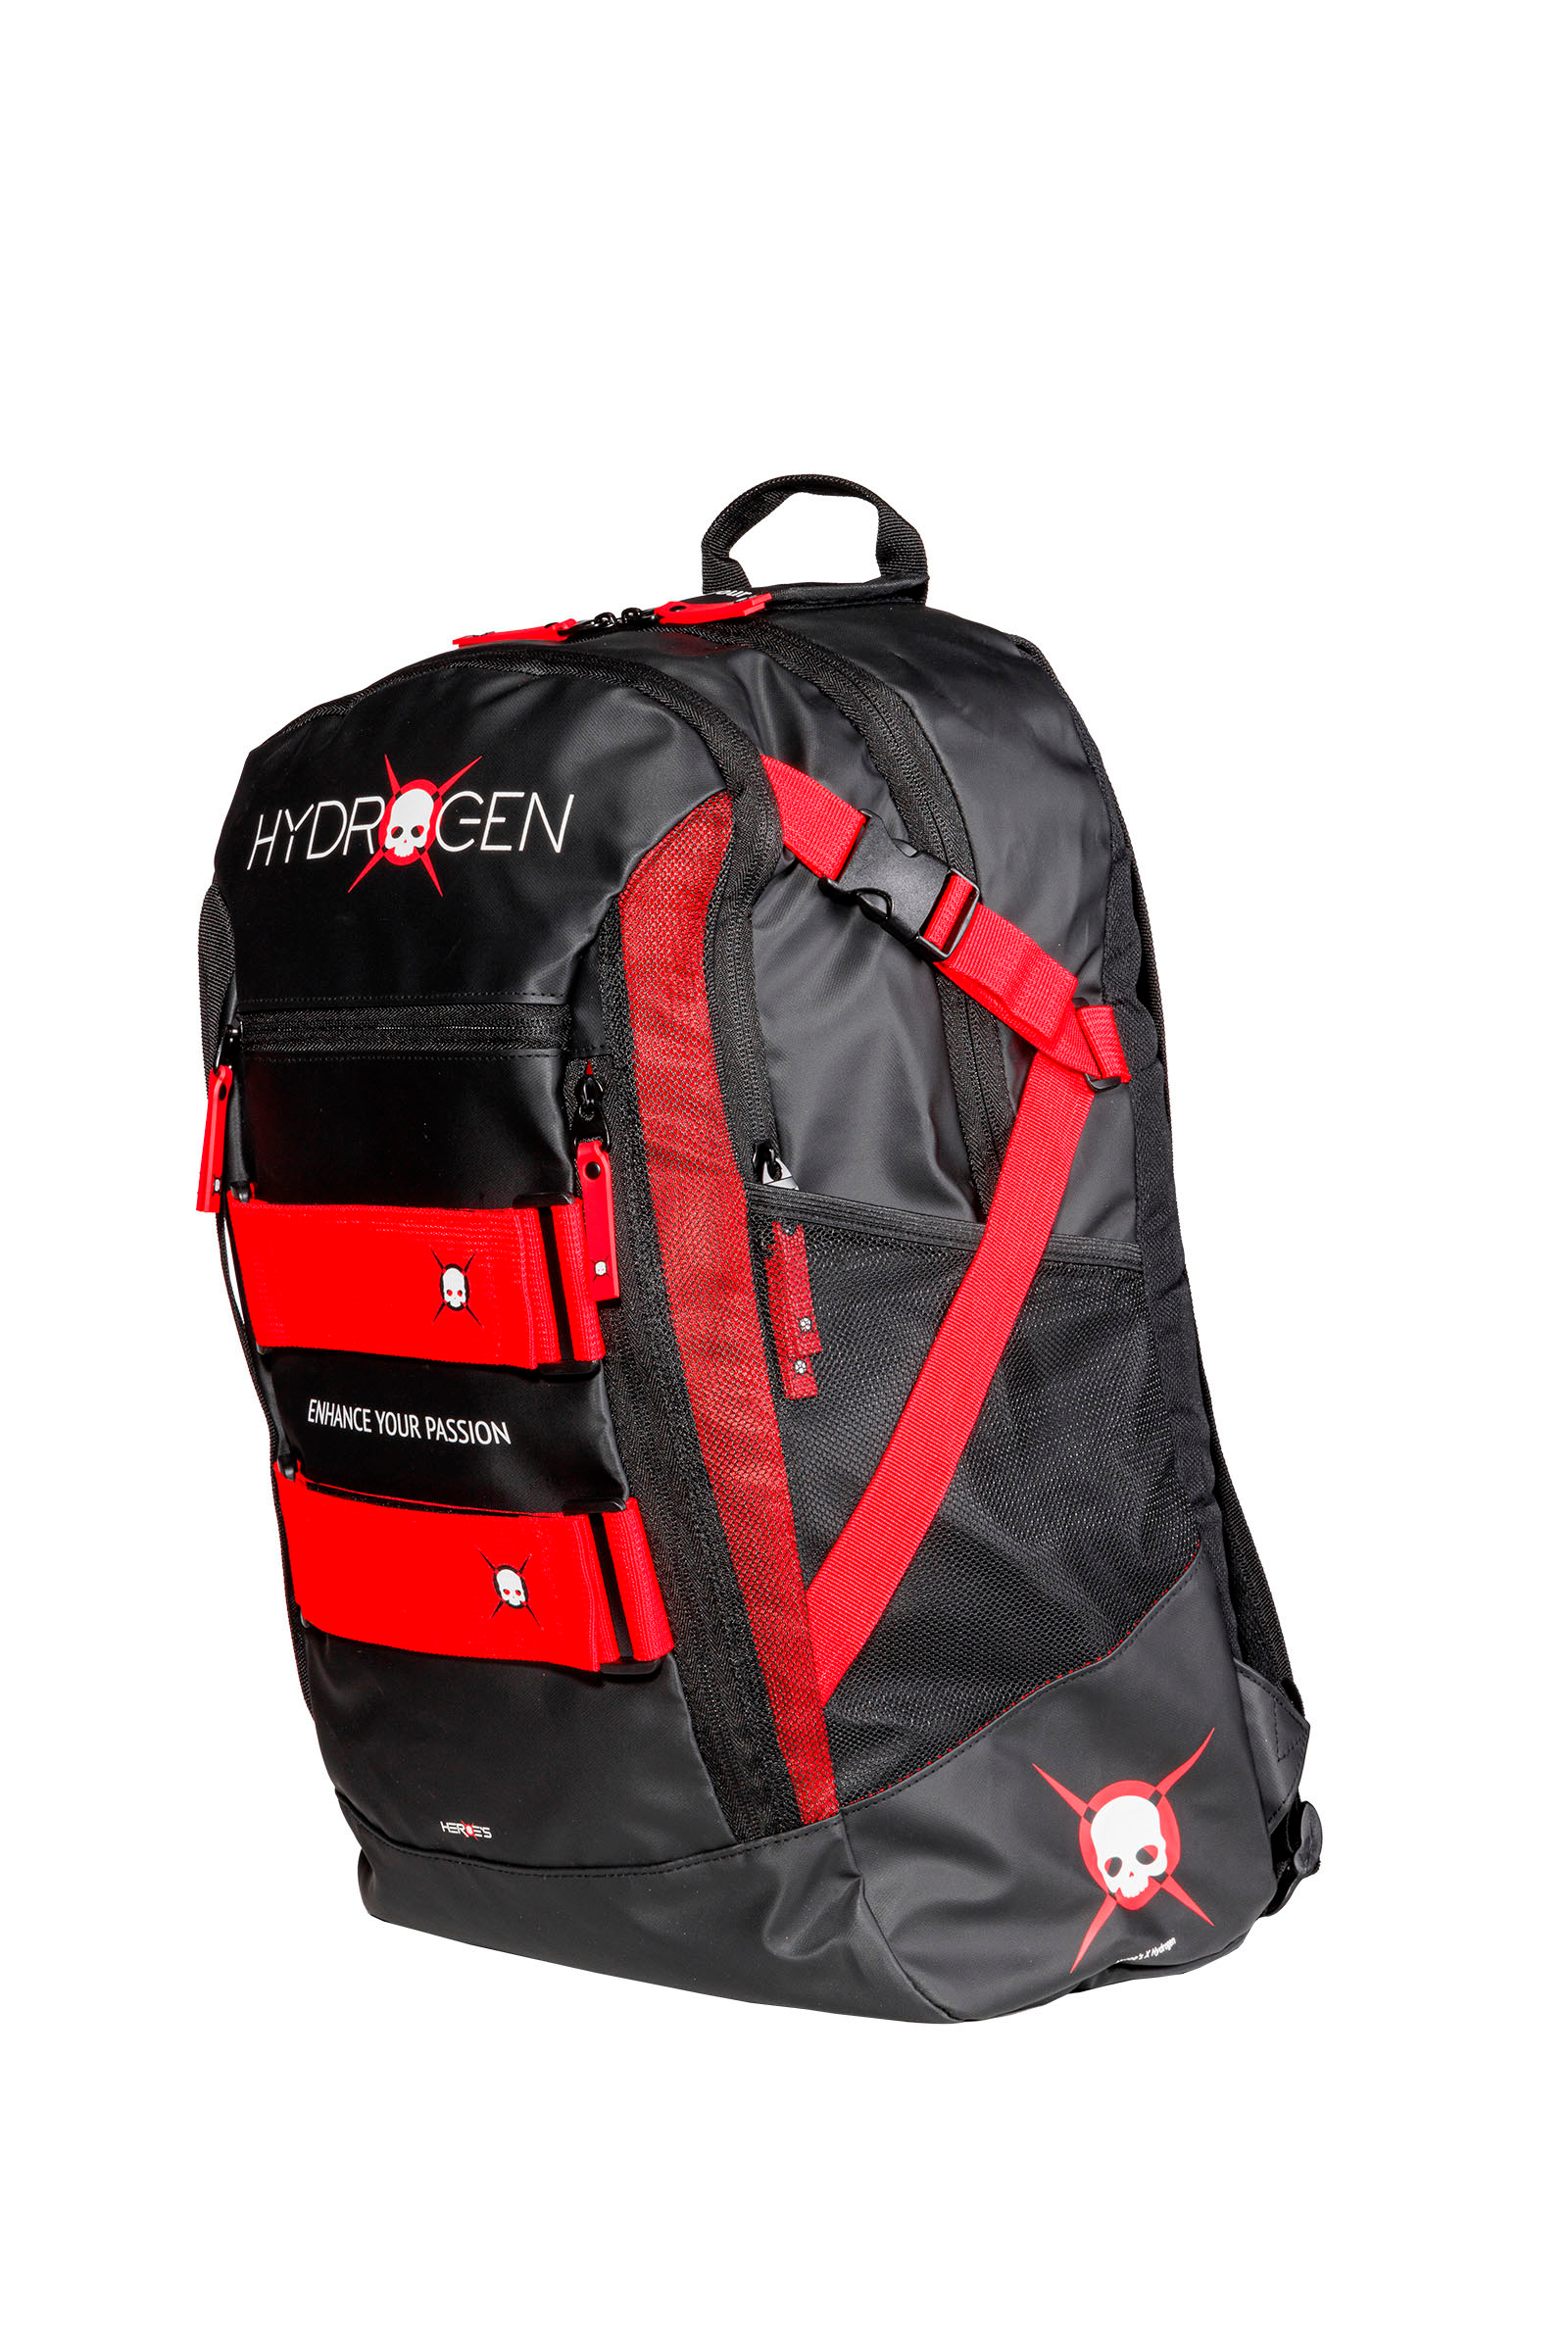 ZAINO GRAVITY - BLACK,RED - Abbigliamento sportivo | Hydrogen